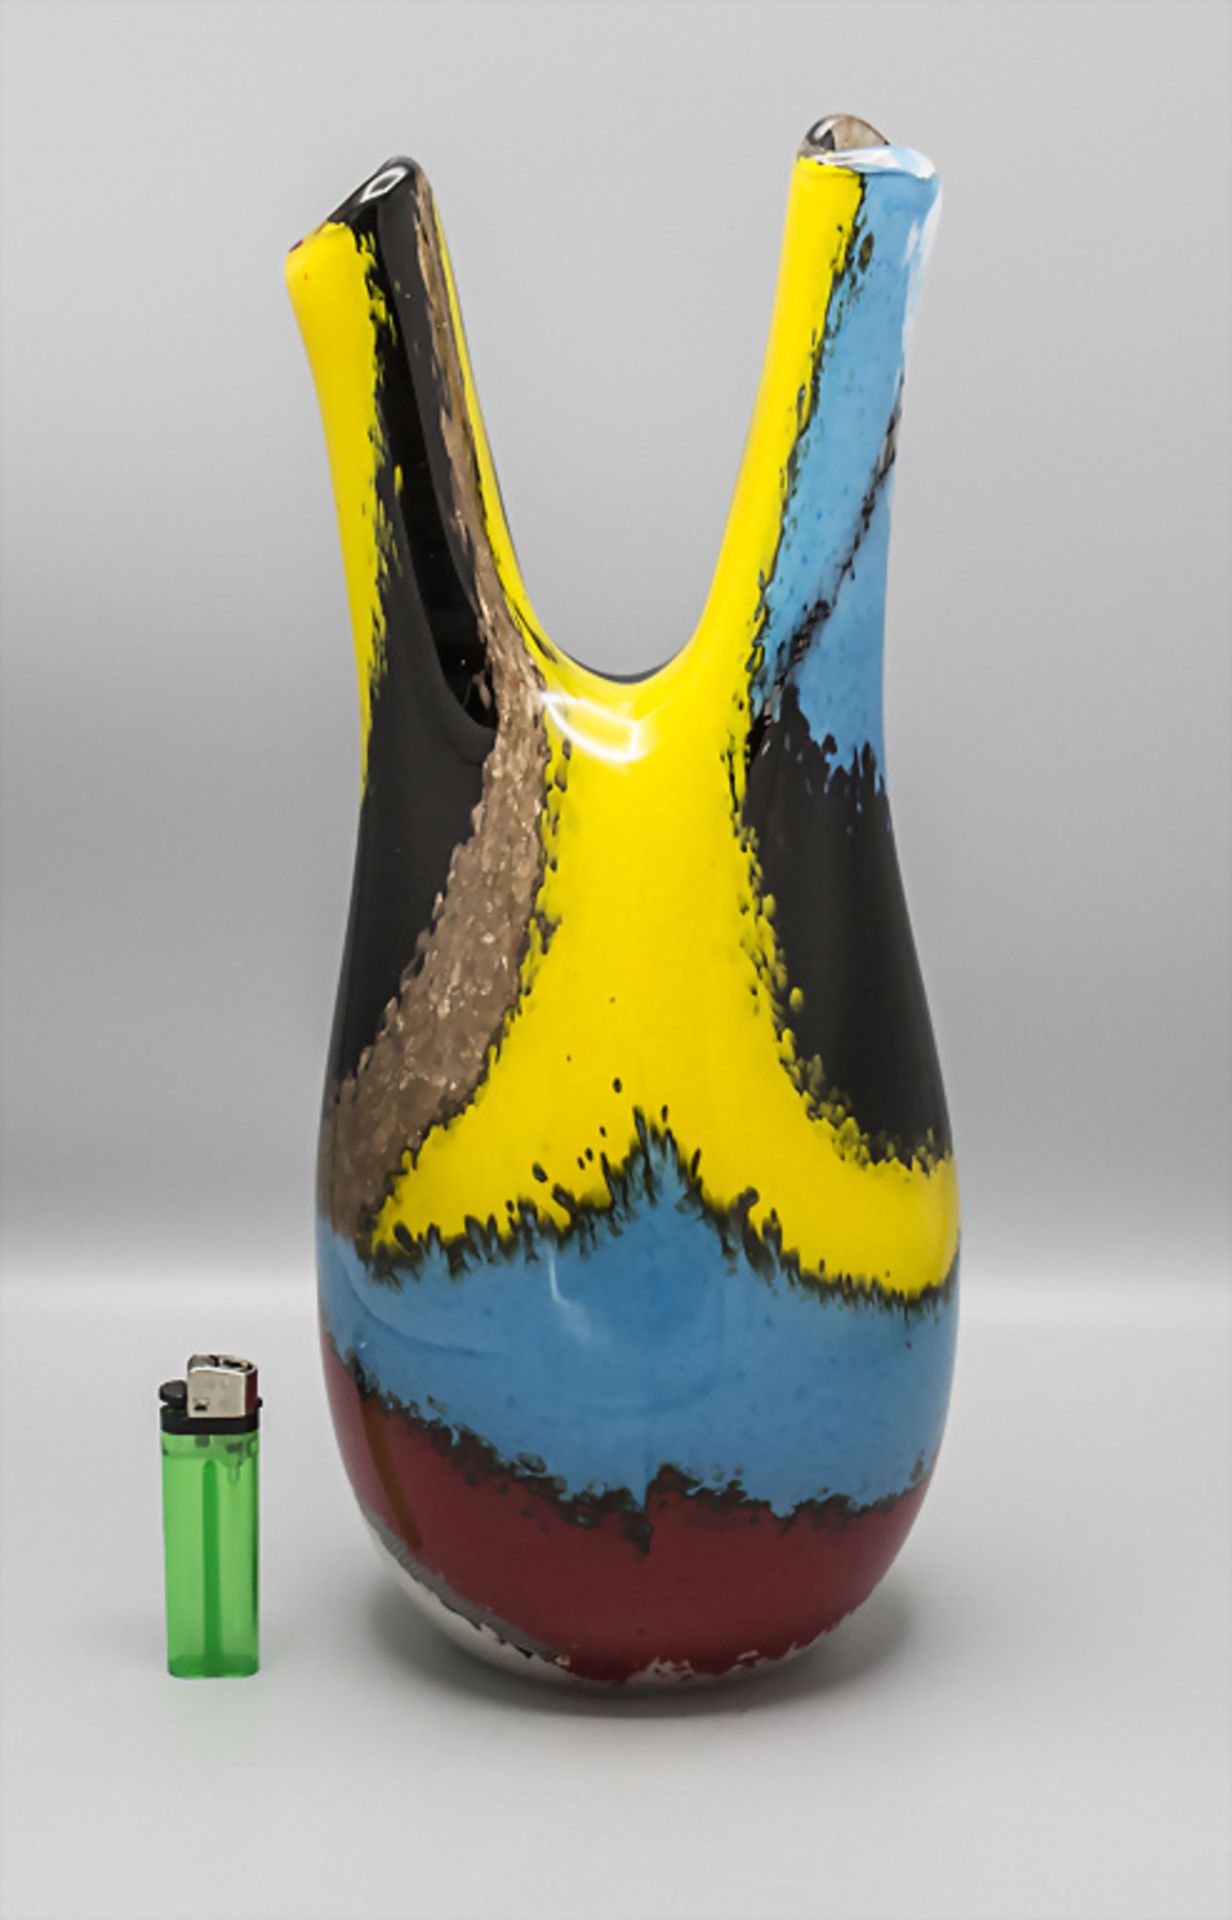 Doppelhalsvase / A double neck vase, Serie 'Oriente Salomone', Dino Martens, Murano, 1950 - Bild 2 aus 5